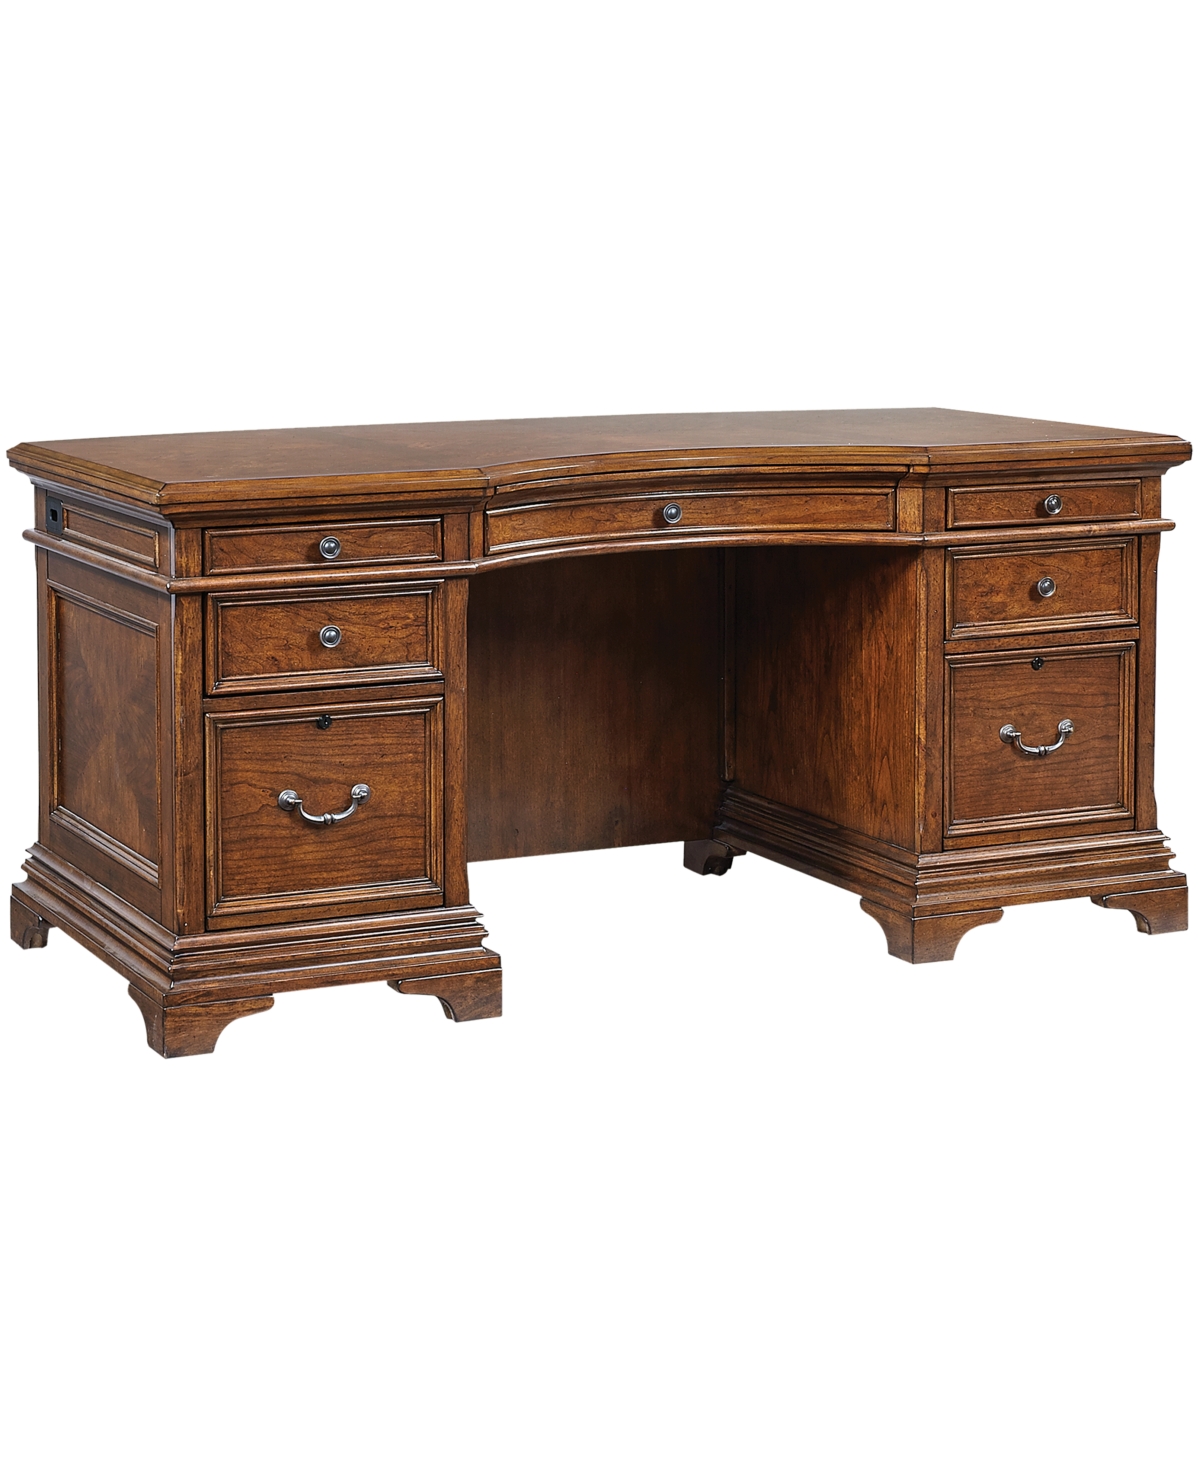 Furniture Hawthorne 66" Curved Exec Desk In Carmel Brown